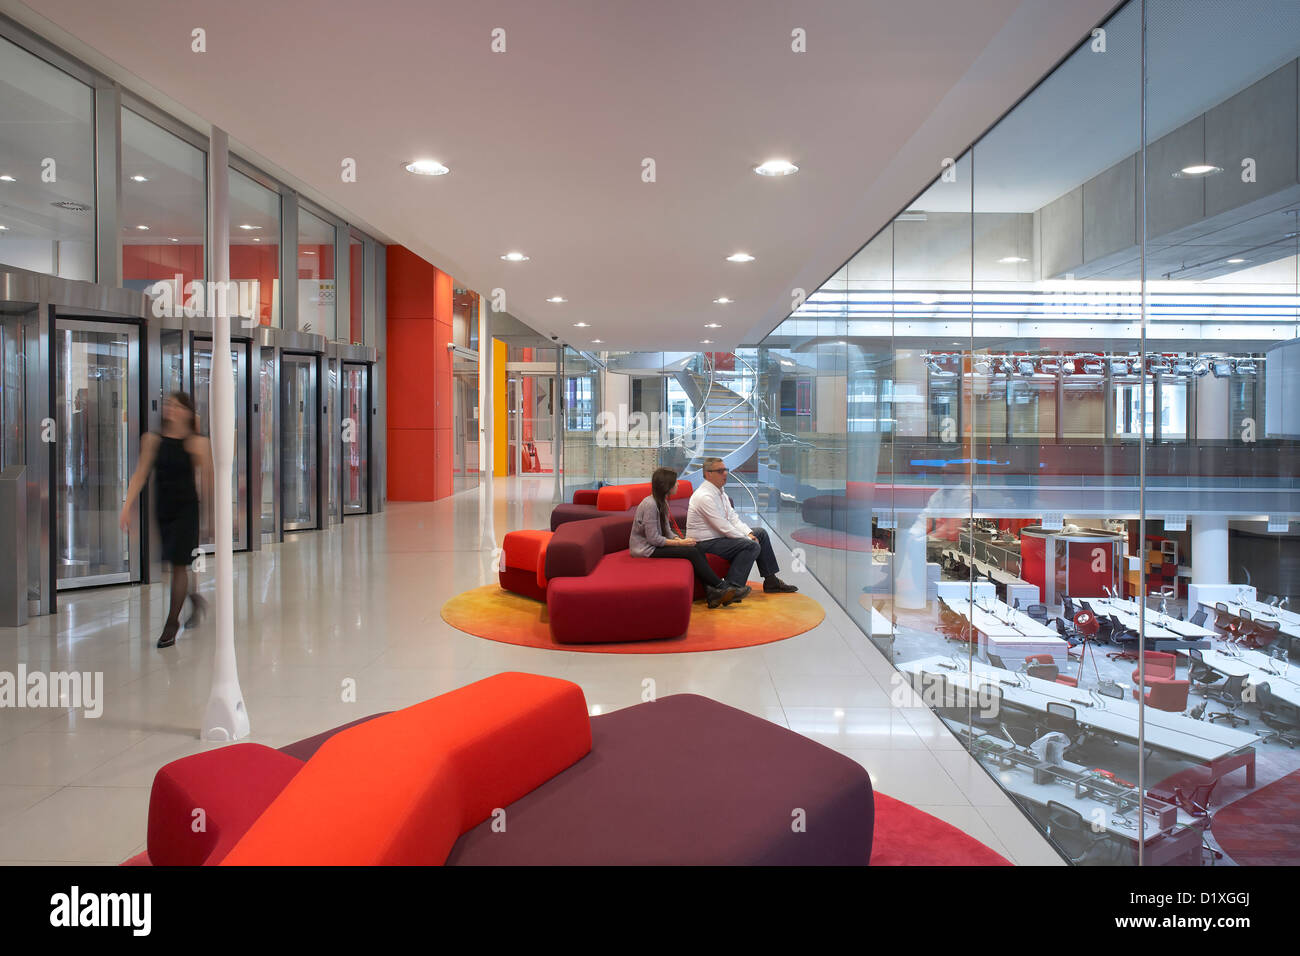 BBC Broadcasting House, Londres, Royaume-Uni. Architecte : HOK International Ltd, 2012. Coin salon avec vue de plan ouvert offic Banque D'Images